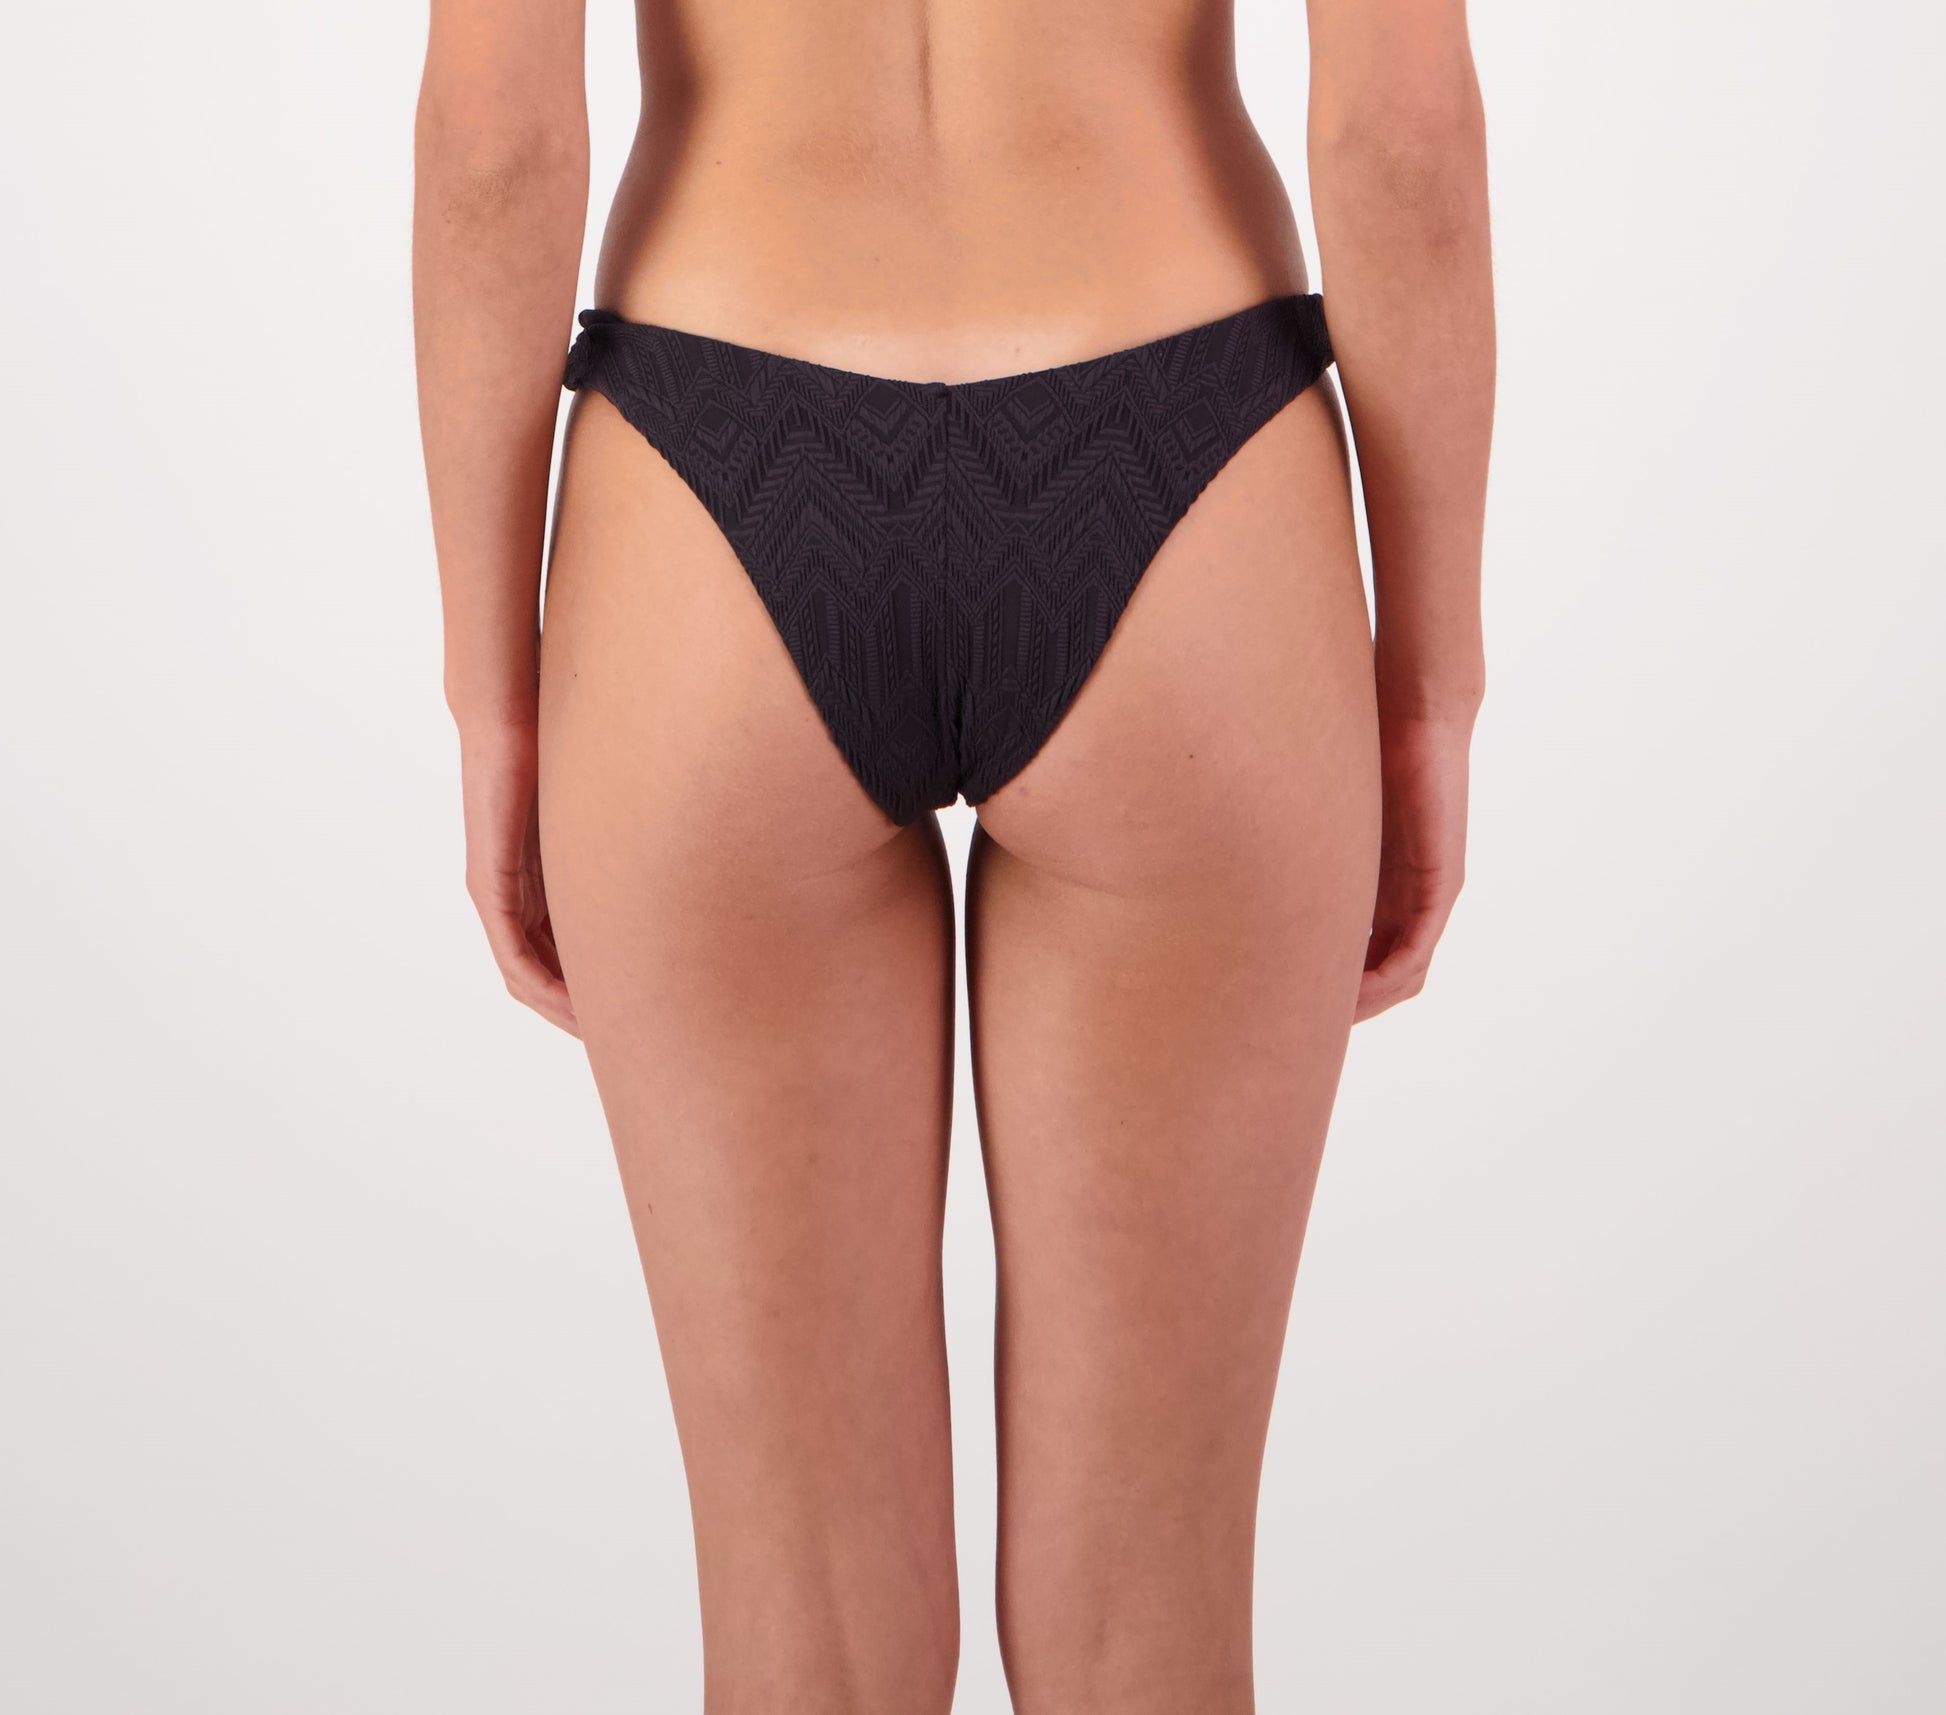 Piha V Pant bikini bottom in black from rear